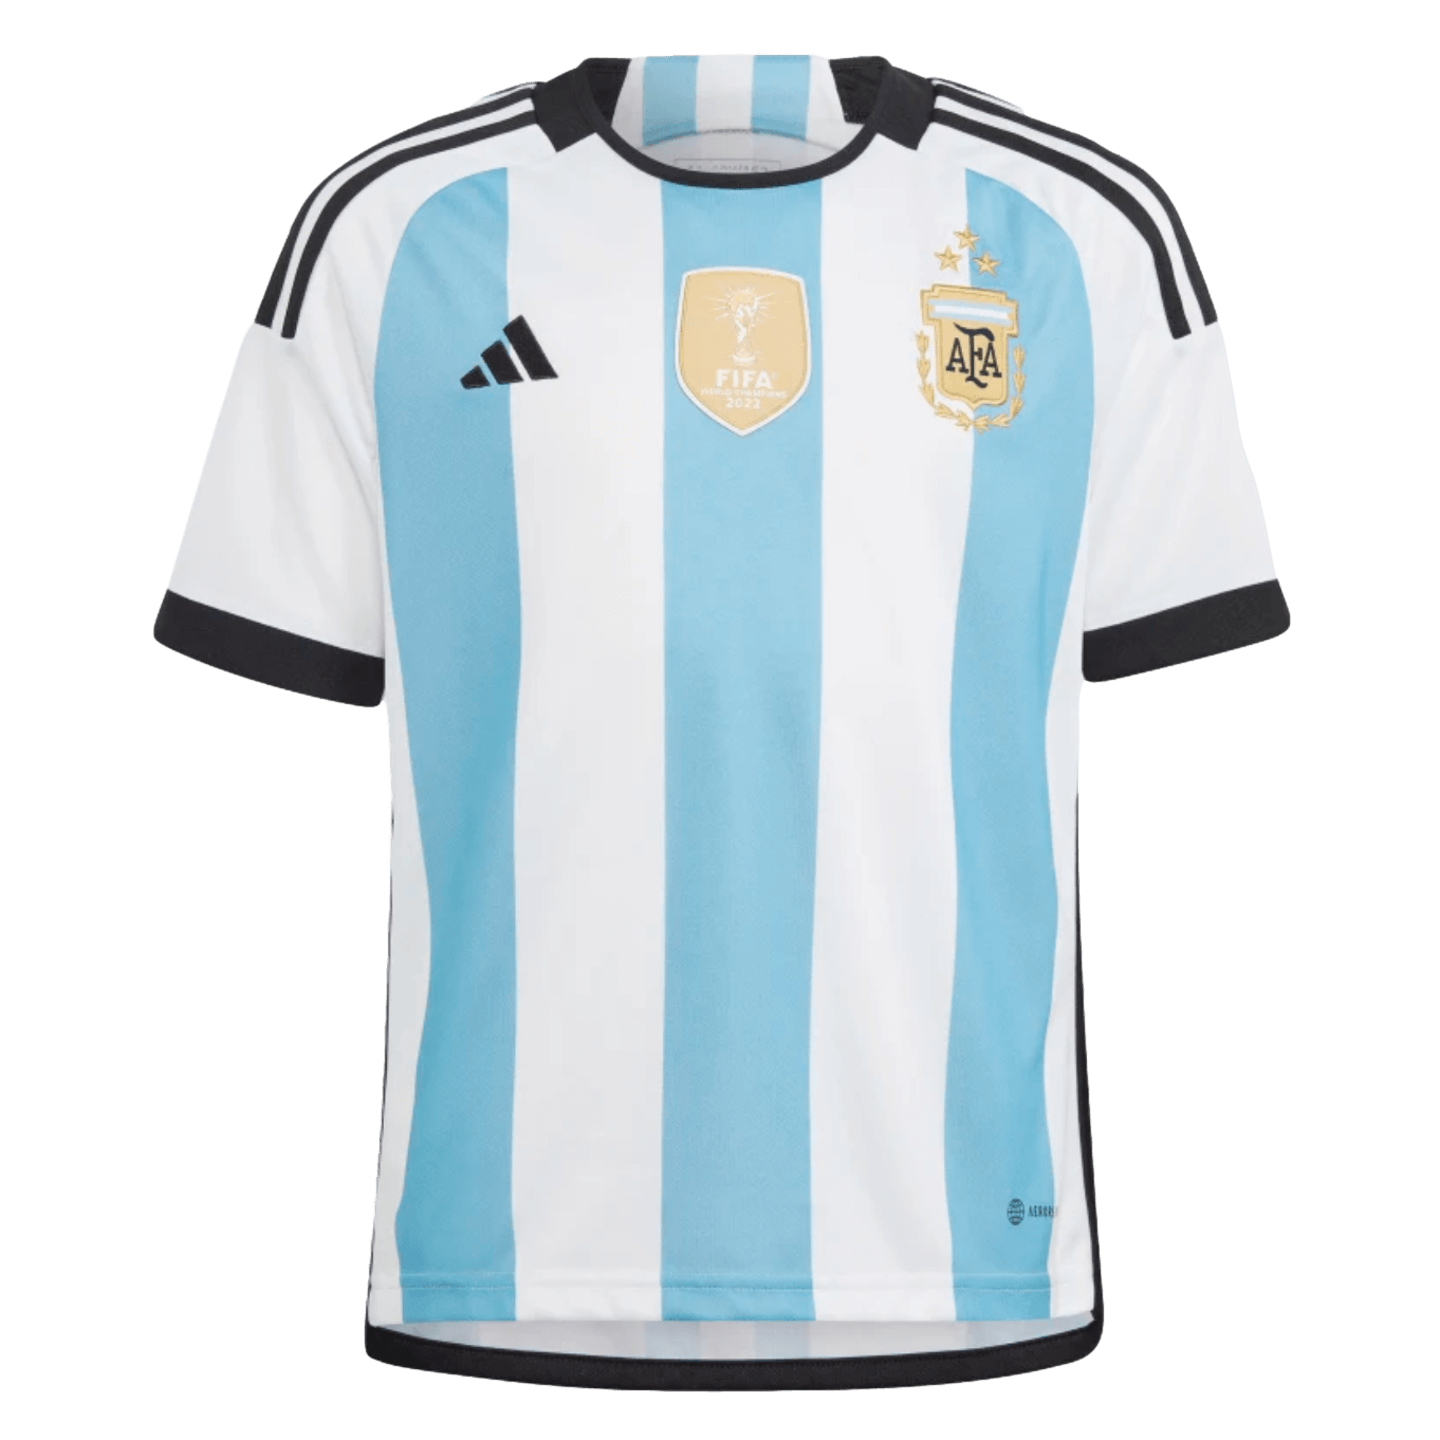 Adidas Argentina 2022 Camiseta juvenil de local de los ganadores de 3 estrellas